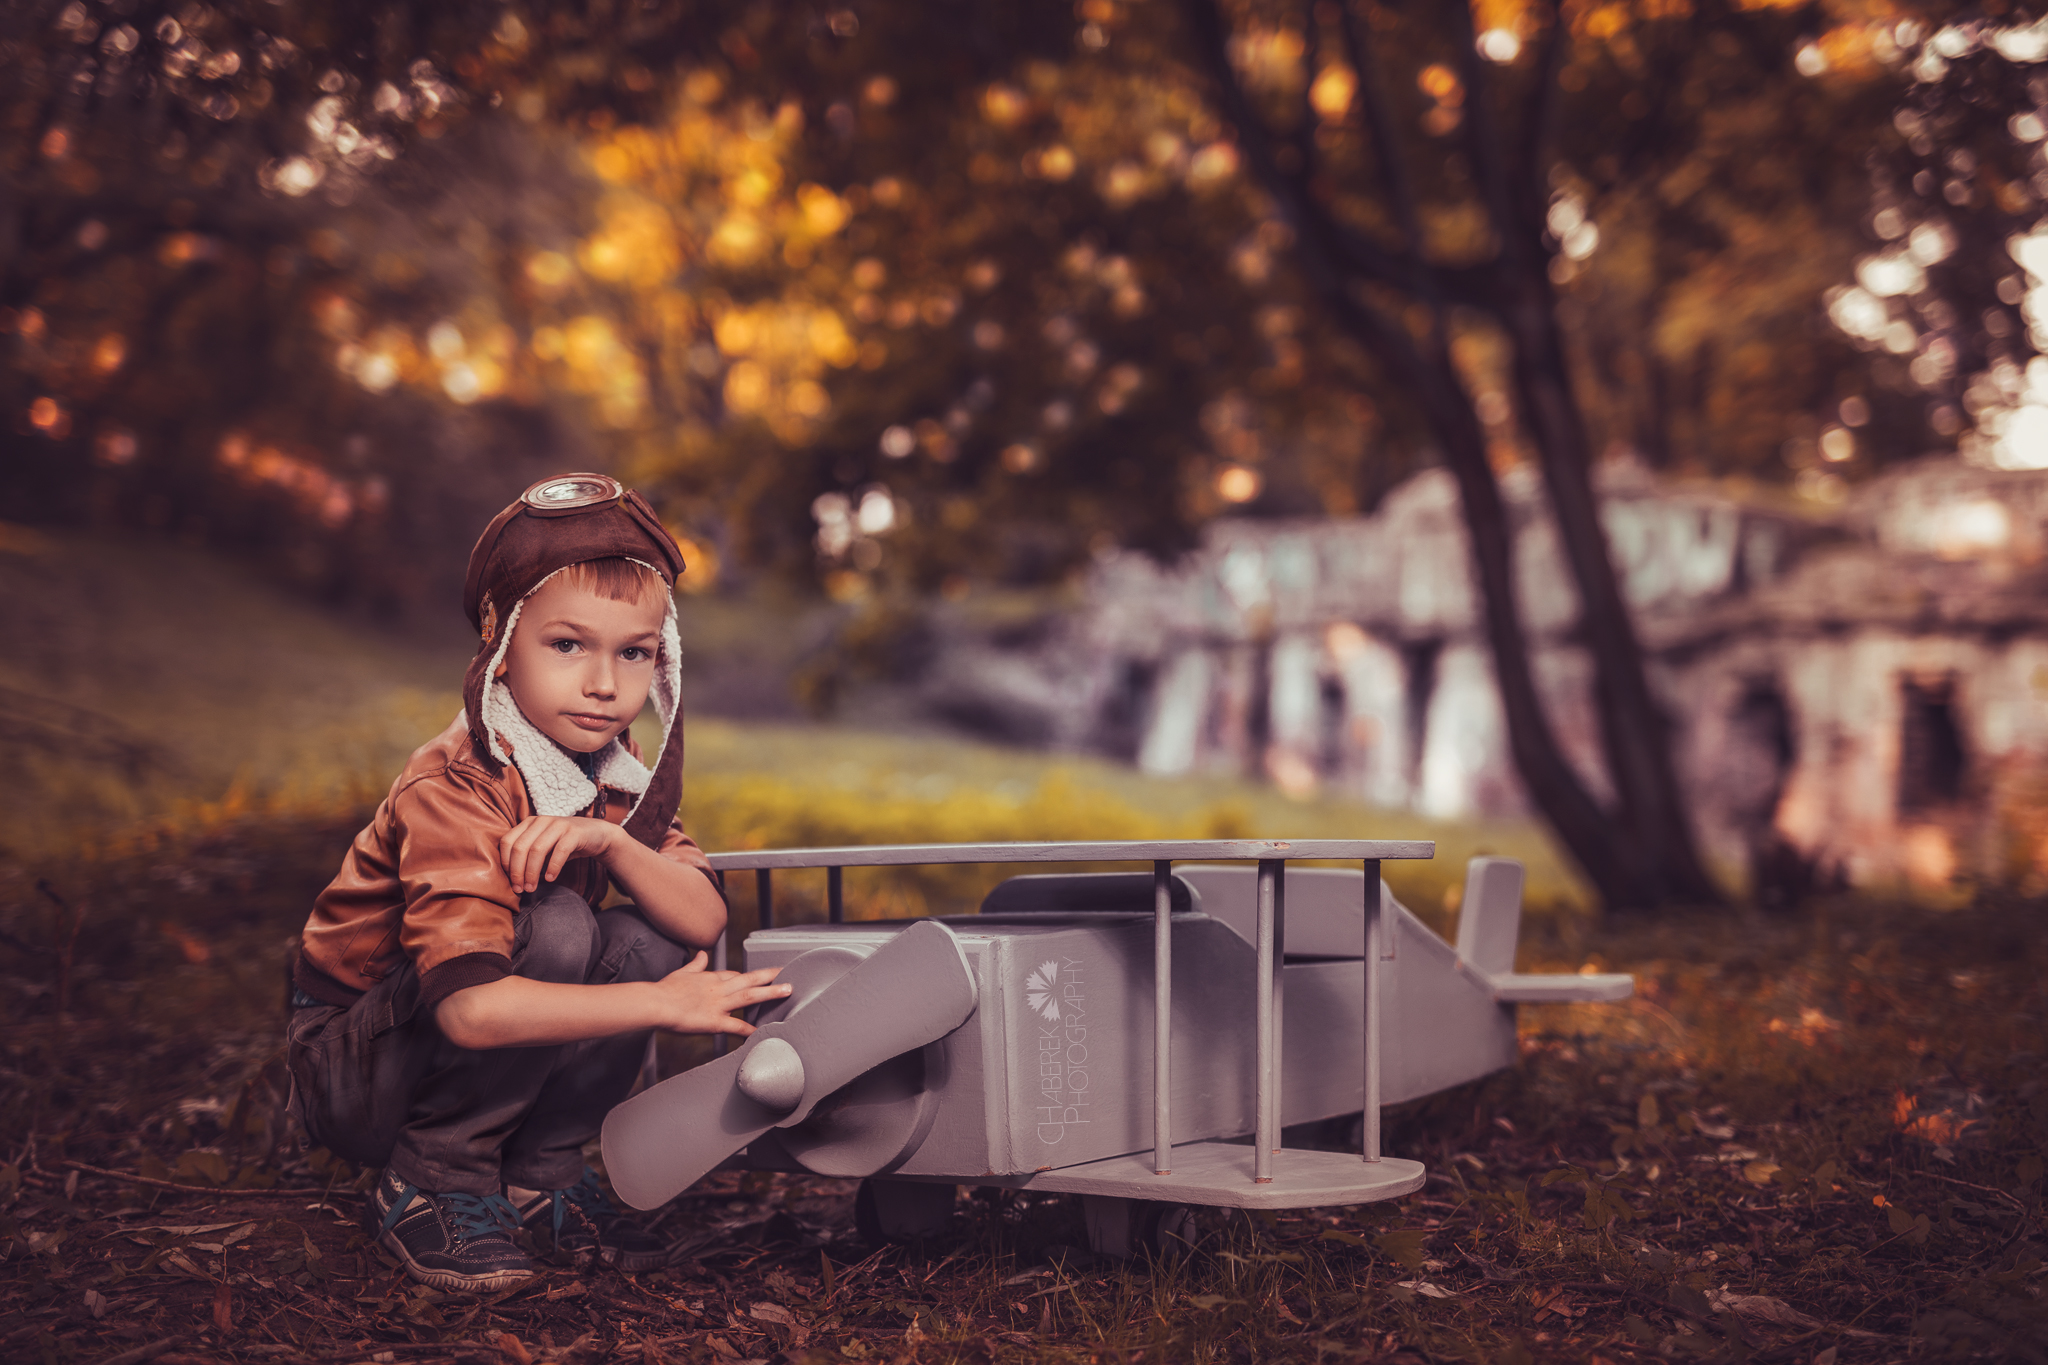 Zdjęcie ze stylizowanej tematycznej sesji zdjęciowej plenerowej z samolotem przedstawiające chłopca naprawiającego śmigło